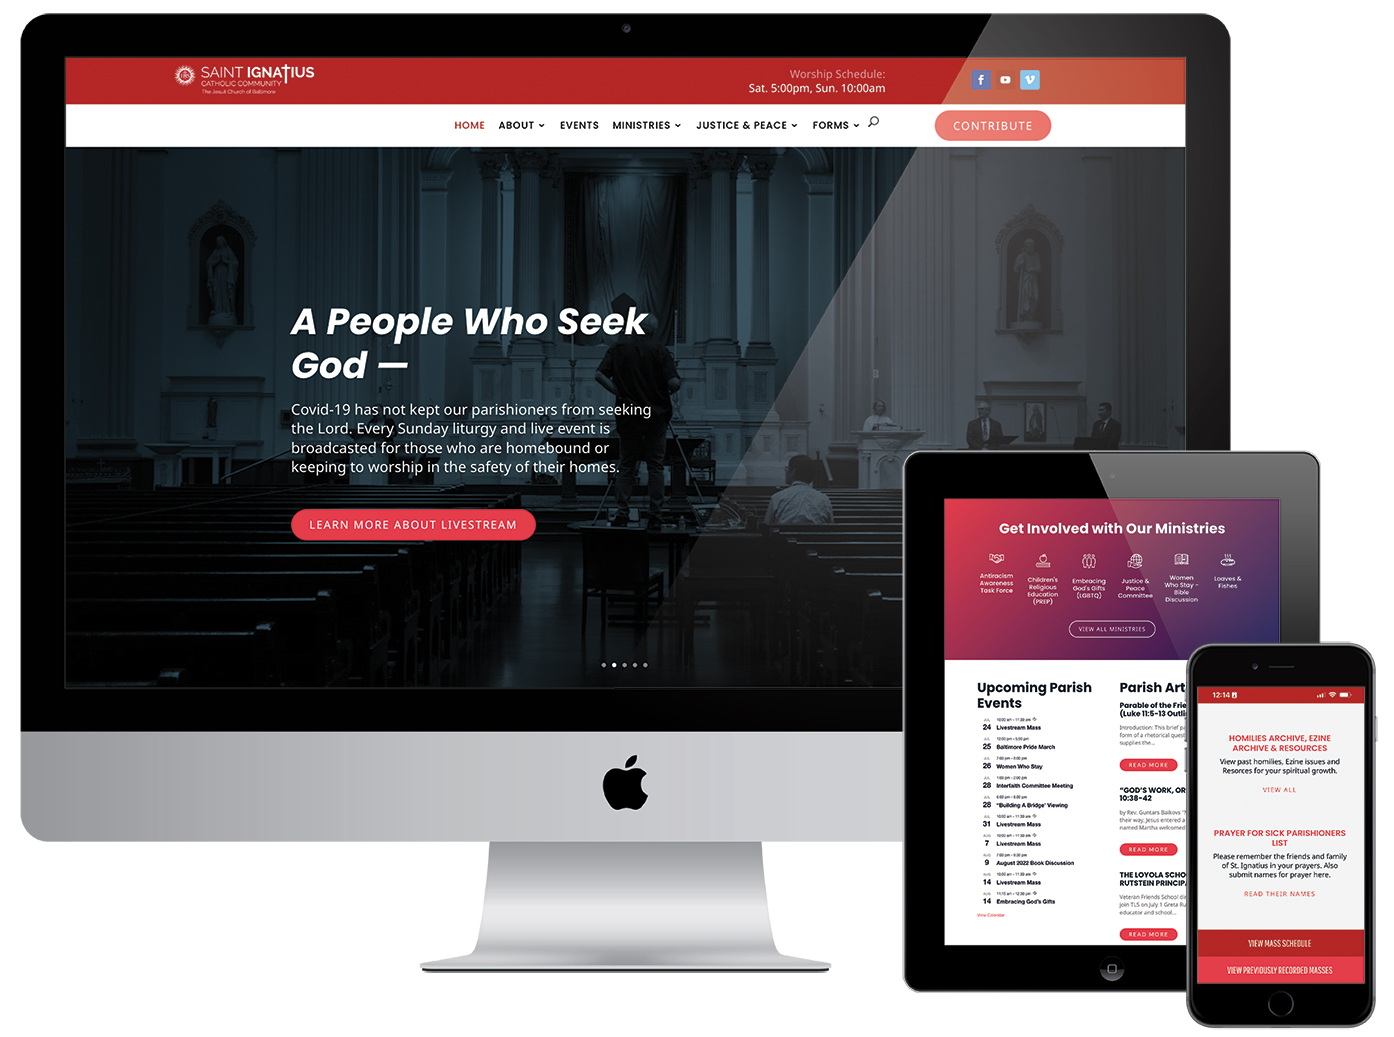 St. Ignatius Website Design — After